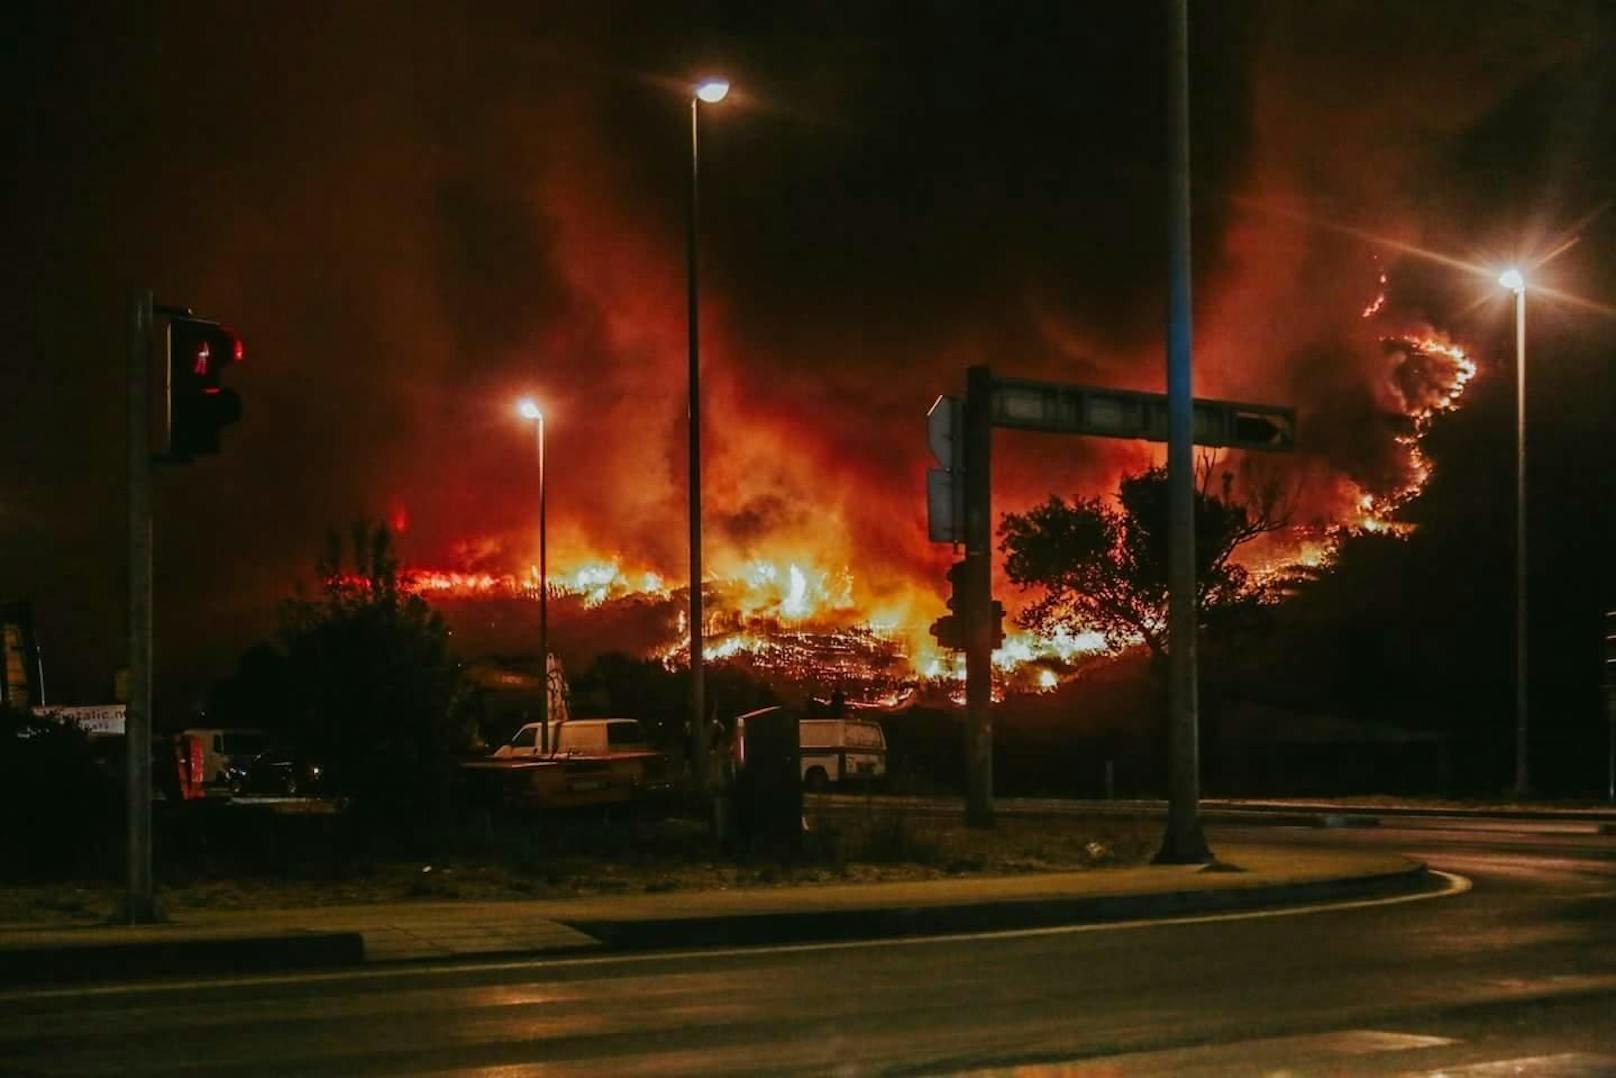 An der Adriaküste verschlangen die Flammen Tausende Hektar Land. Leserreporter teilten ihre Fotos mit der "Heute"-Community.